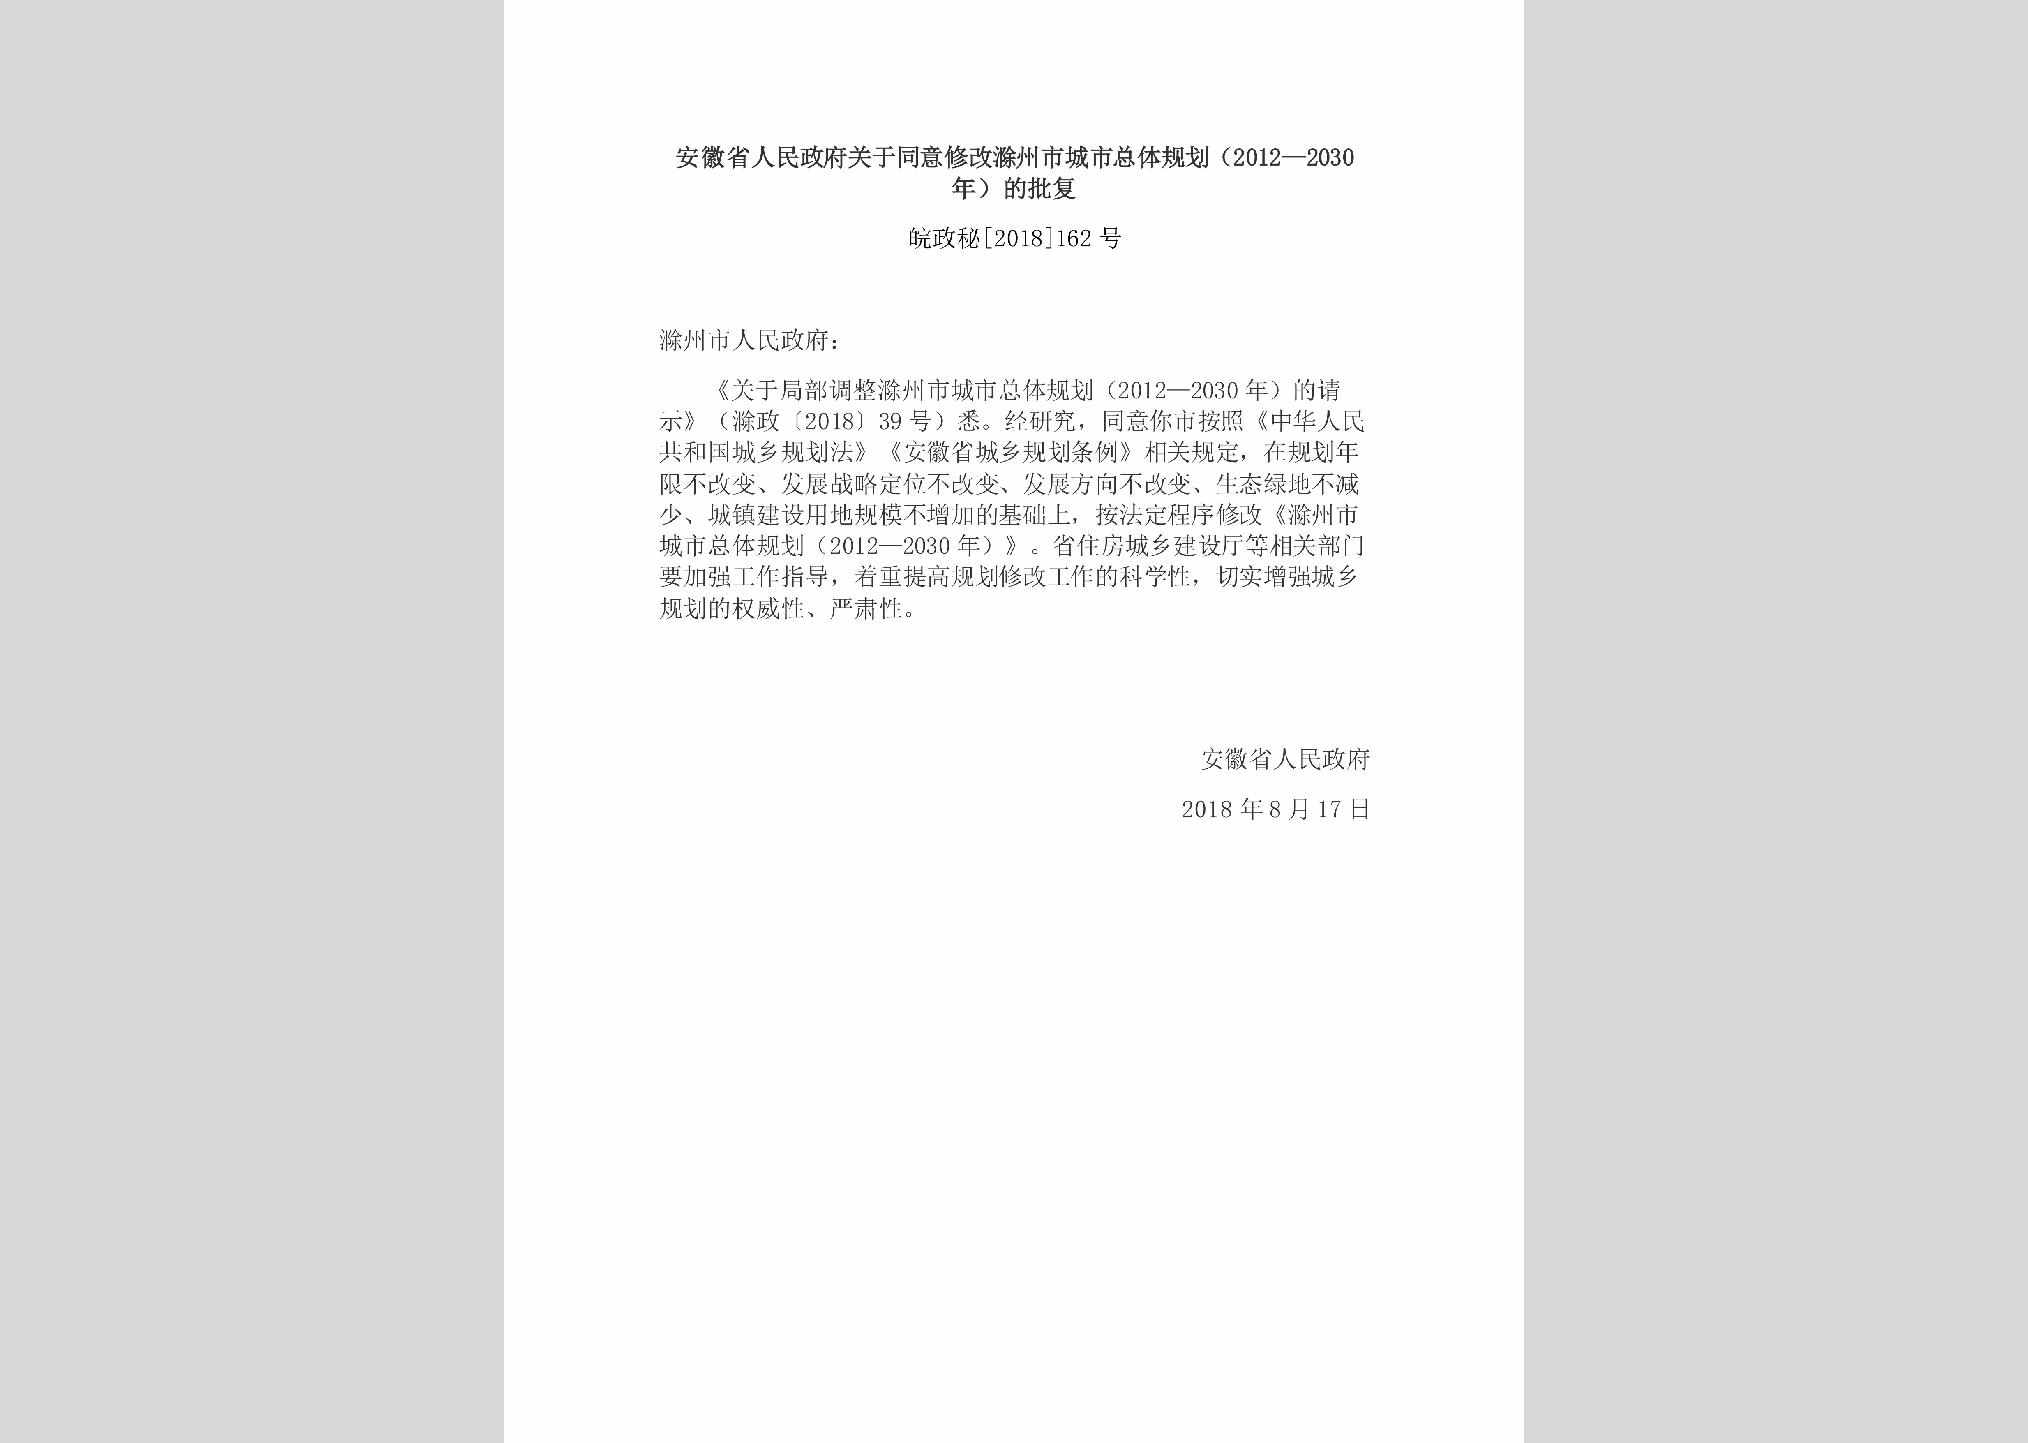 皖政秘[2018]162号：安徽省人民政府关于同意修改滁州市城市总体规划（2012—2030年）的批复